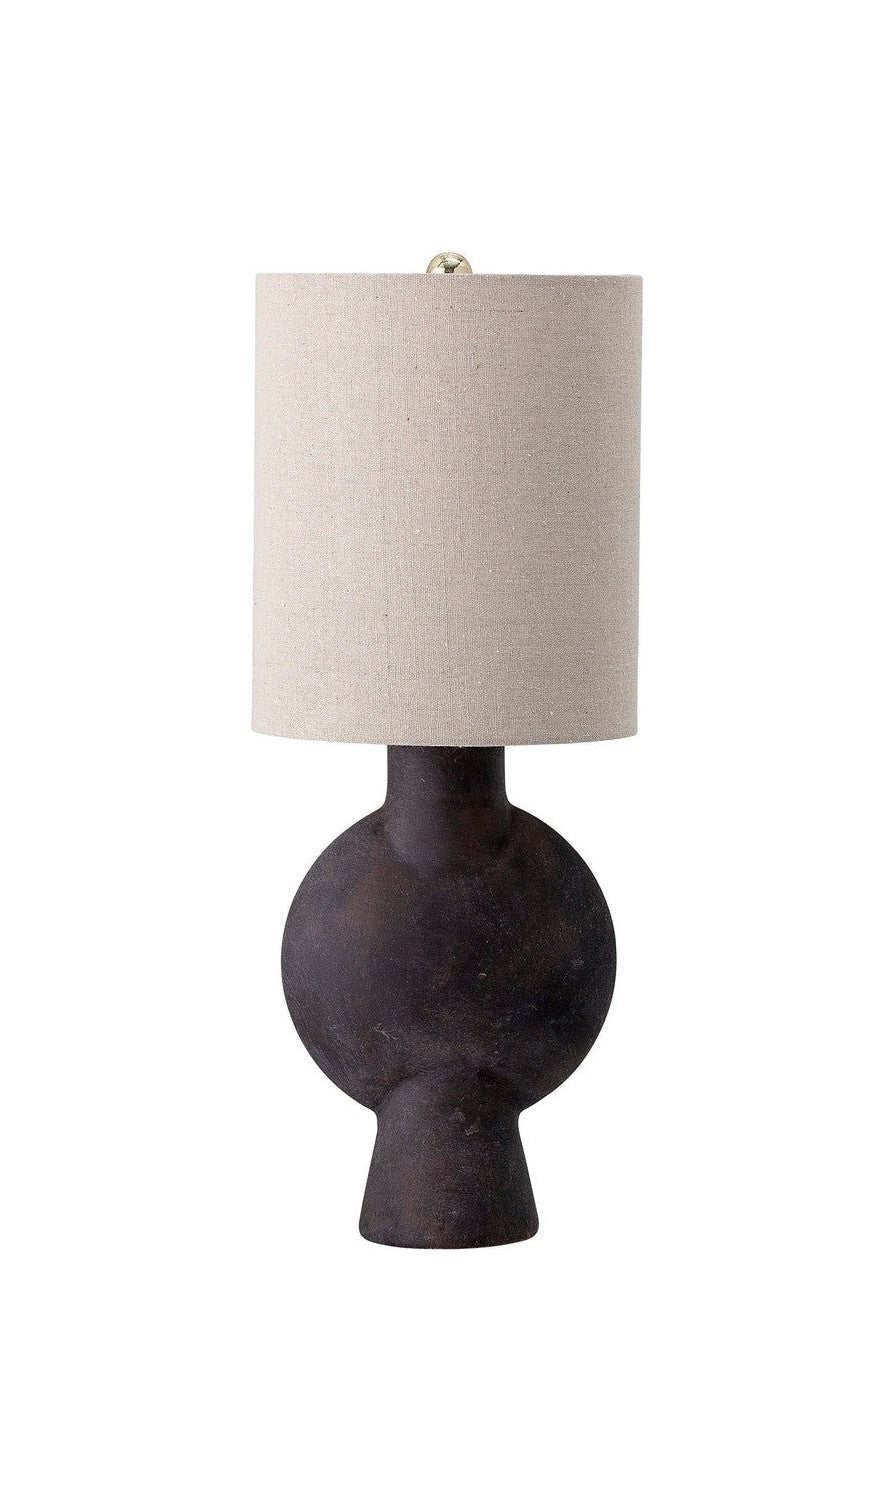 Bloomingville Sergio stolní lampa, hnědá, terakota